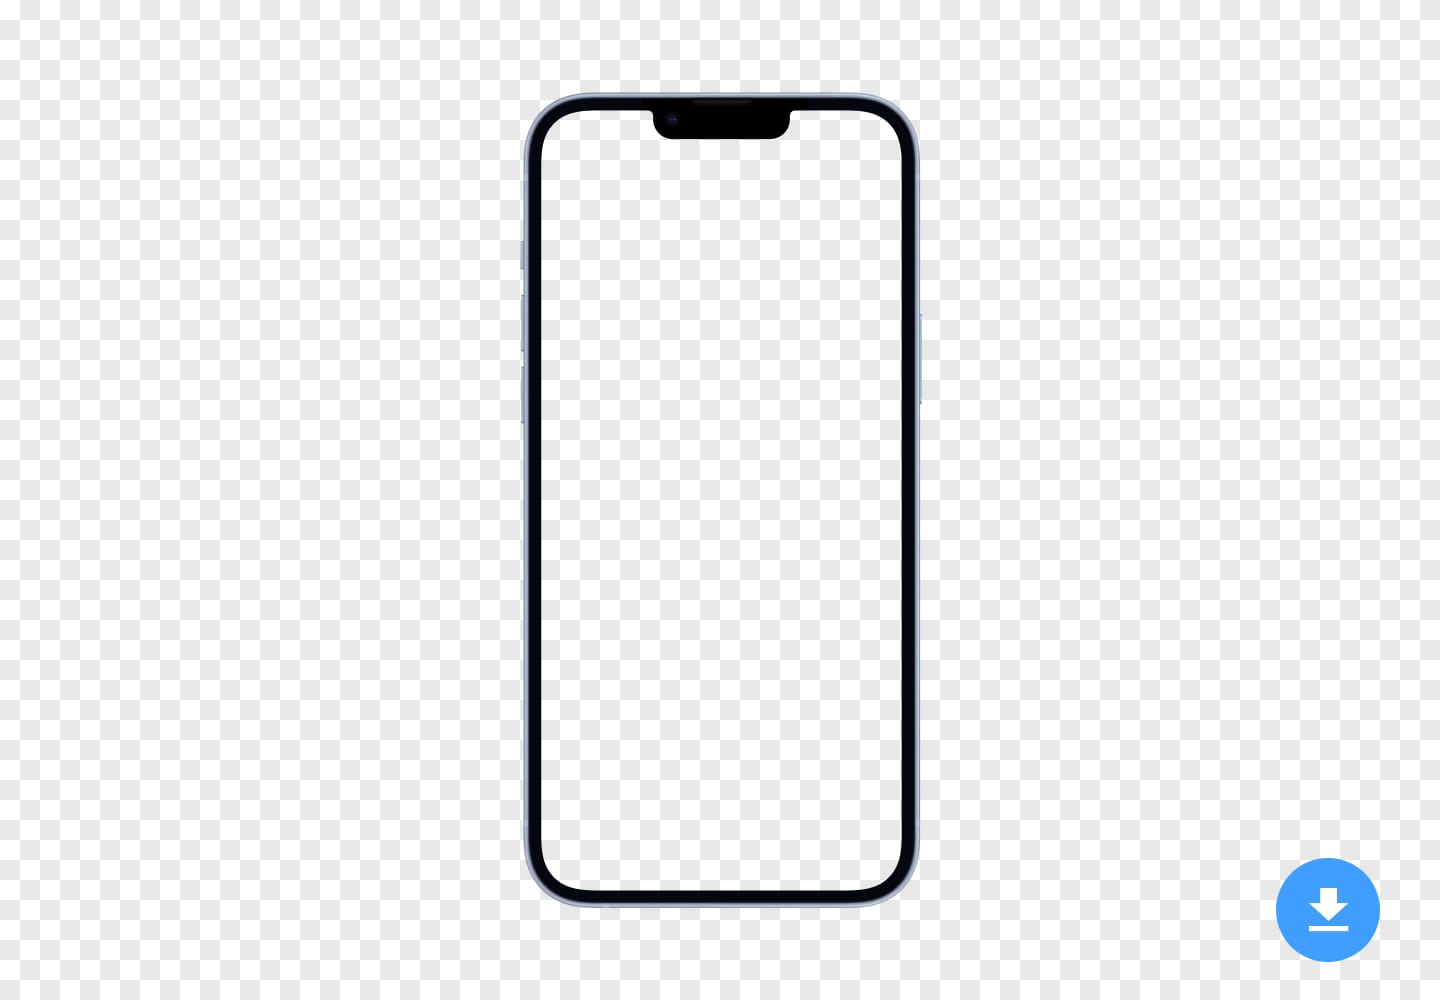 Maqueta HD gratuita de Apple iPhone 14 (2022) en formato de imagen PNG y PSD con fondo transparente